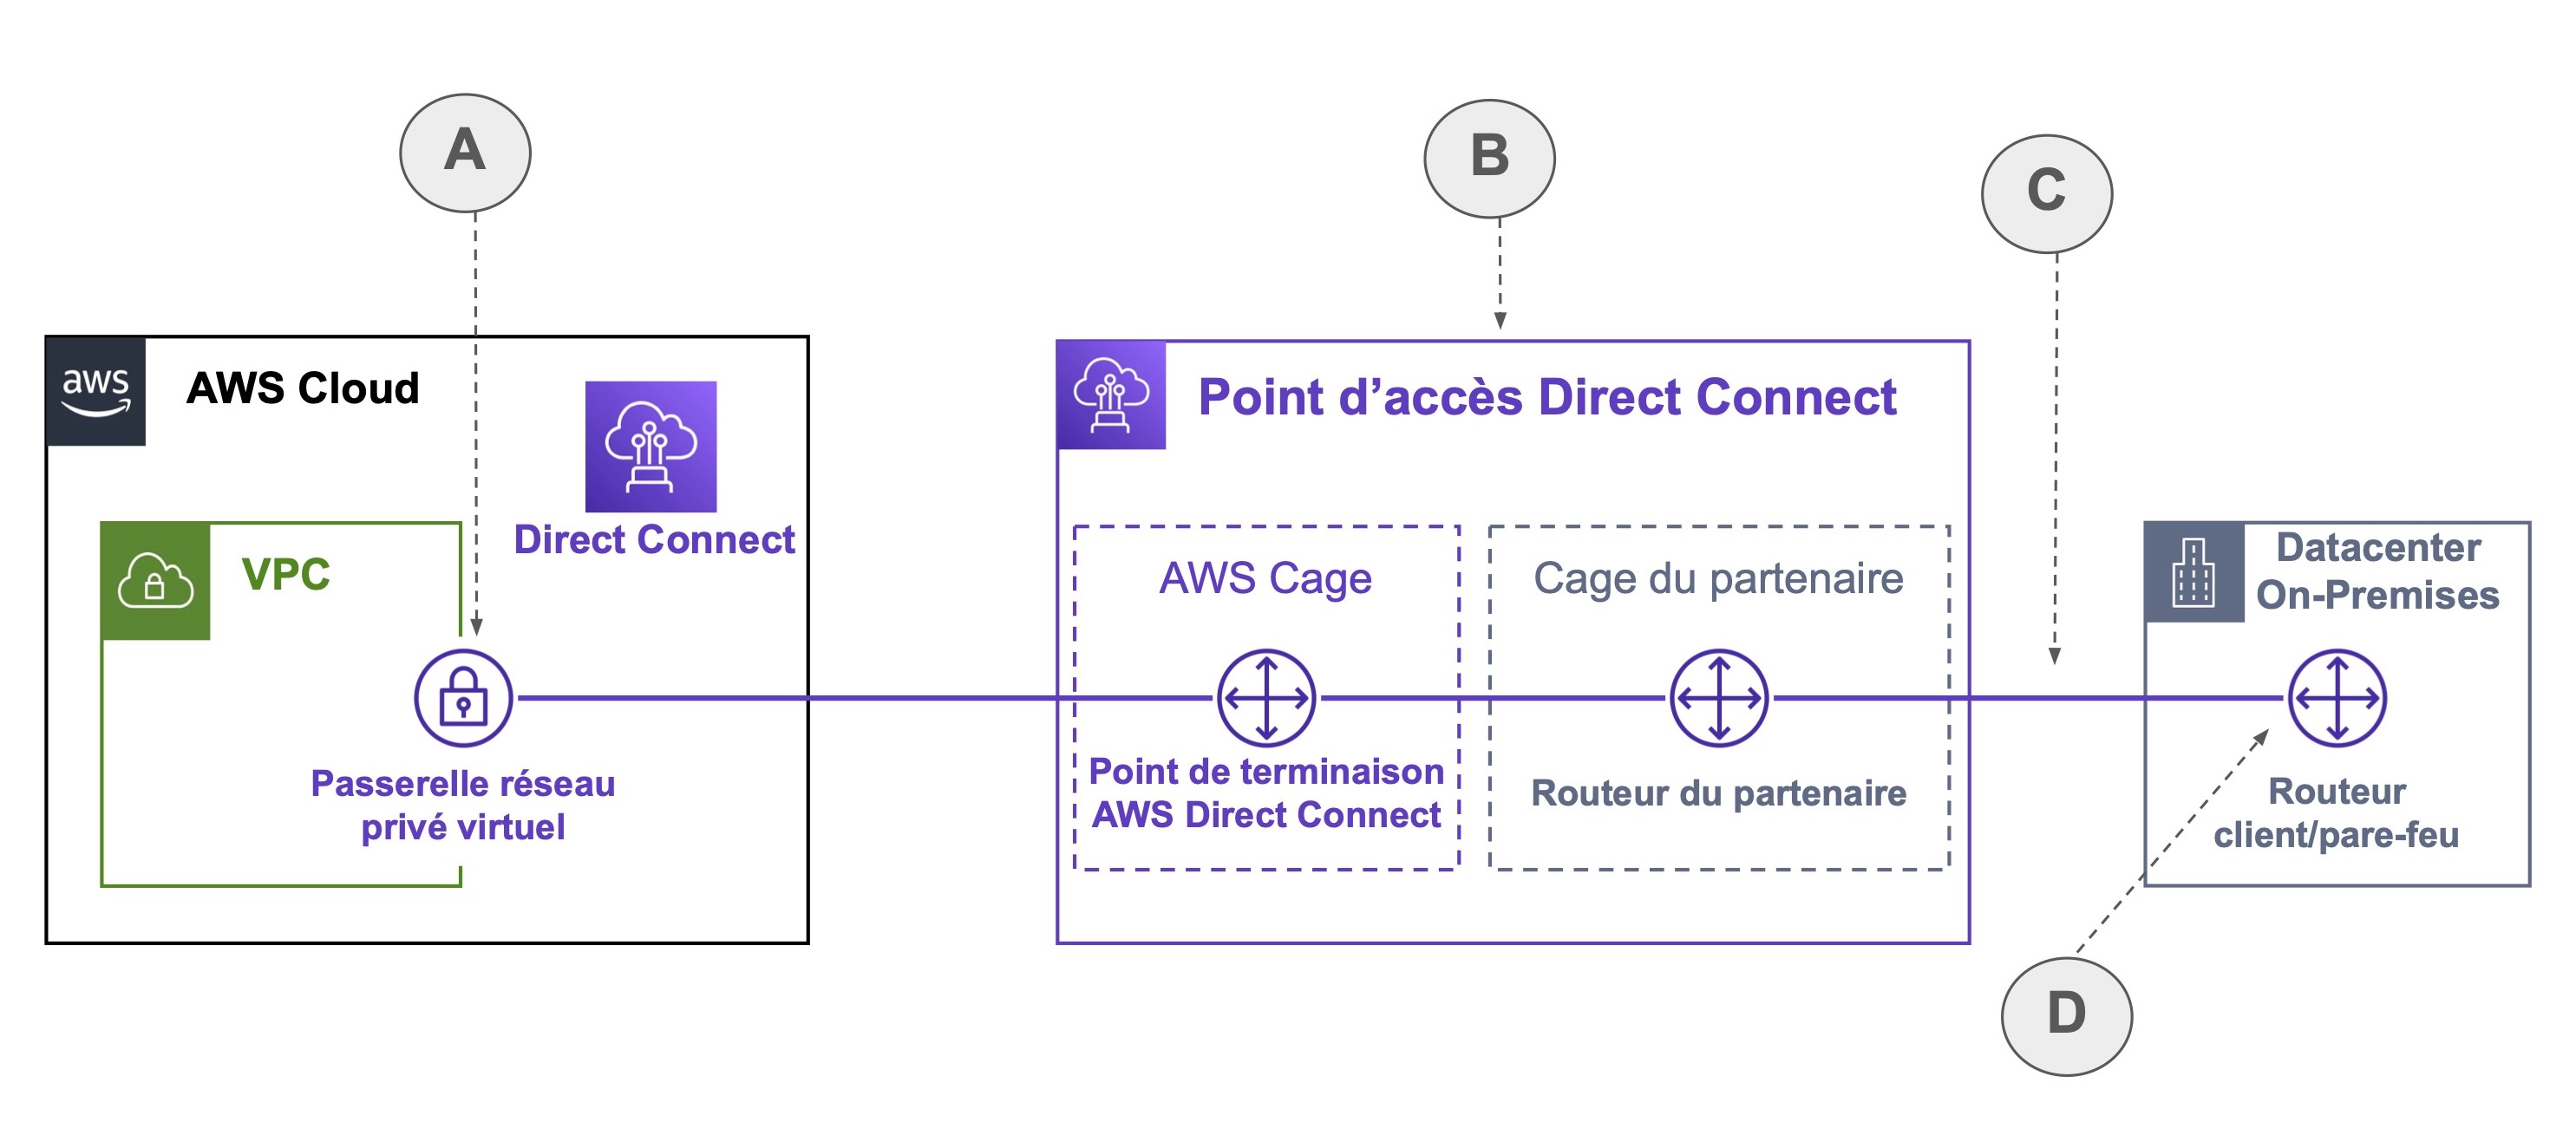 Le chemin mène d'une passerelle réséau privé virtuel (A) d'un VPC vers de point d'accès direct connect (B): le point de terminaison AWS Direct connect puis le Routeur du partenaire, et finit (C) sur le routeur client/pare-feu d'un DataCenter On-Premi